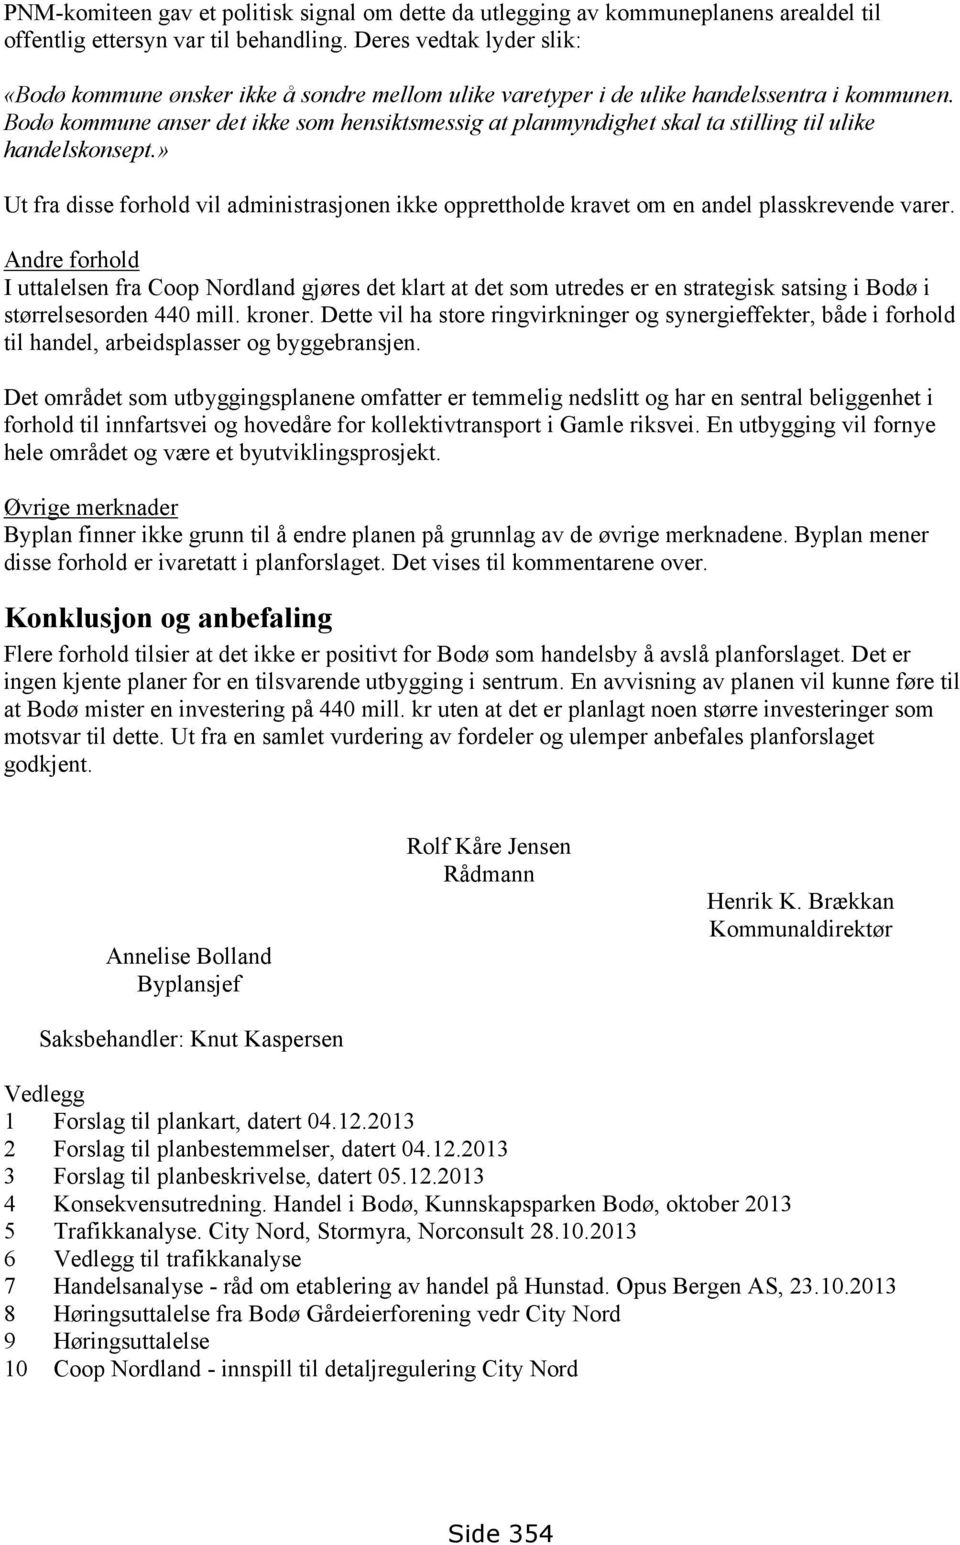 Bodø kommune anser det ikke som hensiktsmessig at planmyndighet skal ta stilling til ulike handelskonsept.